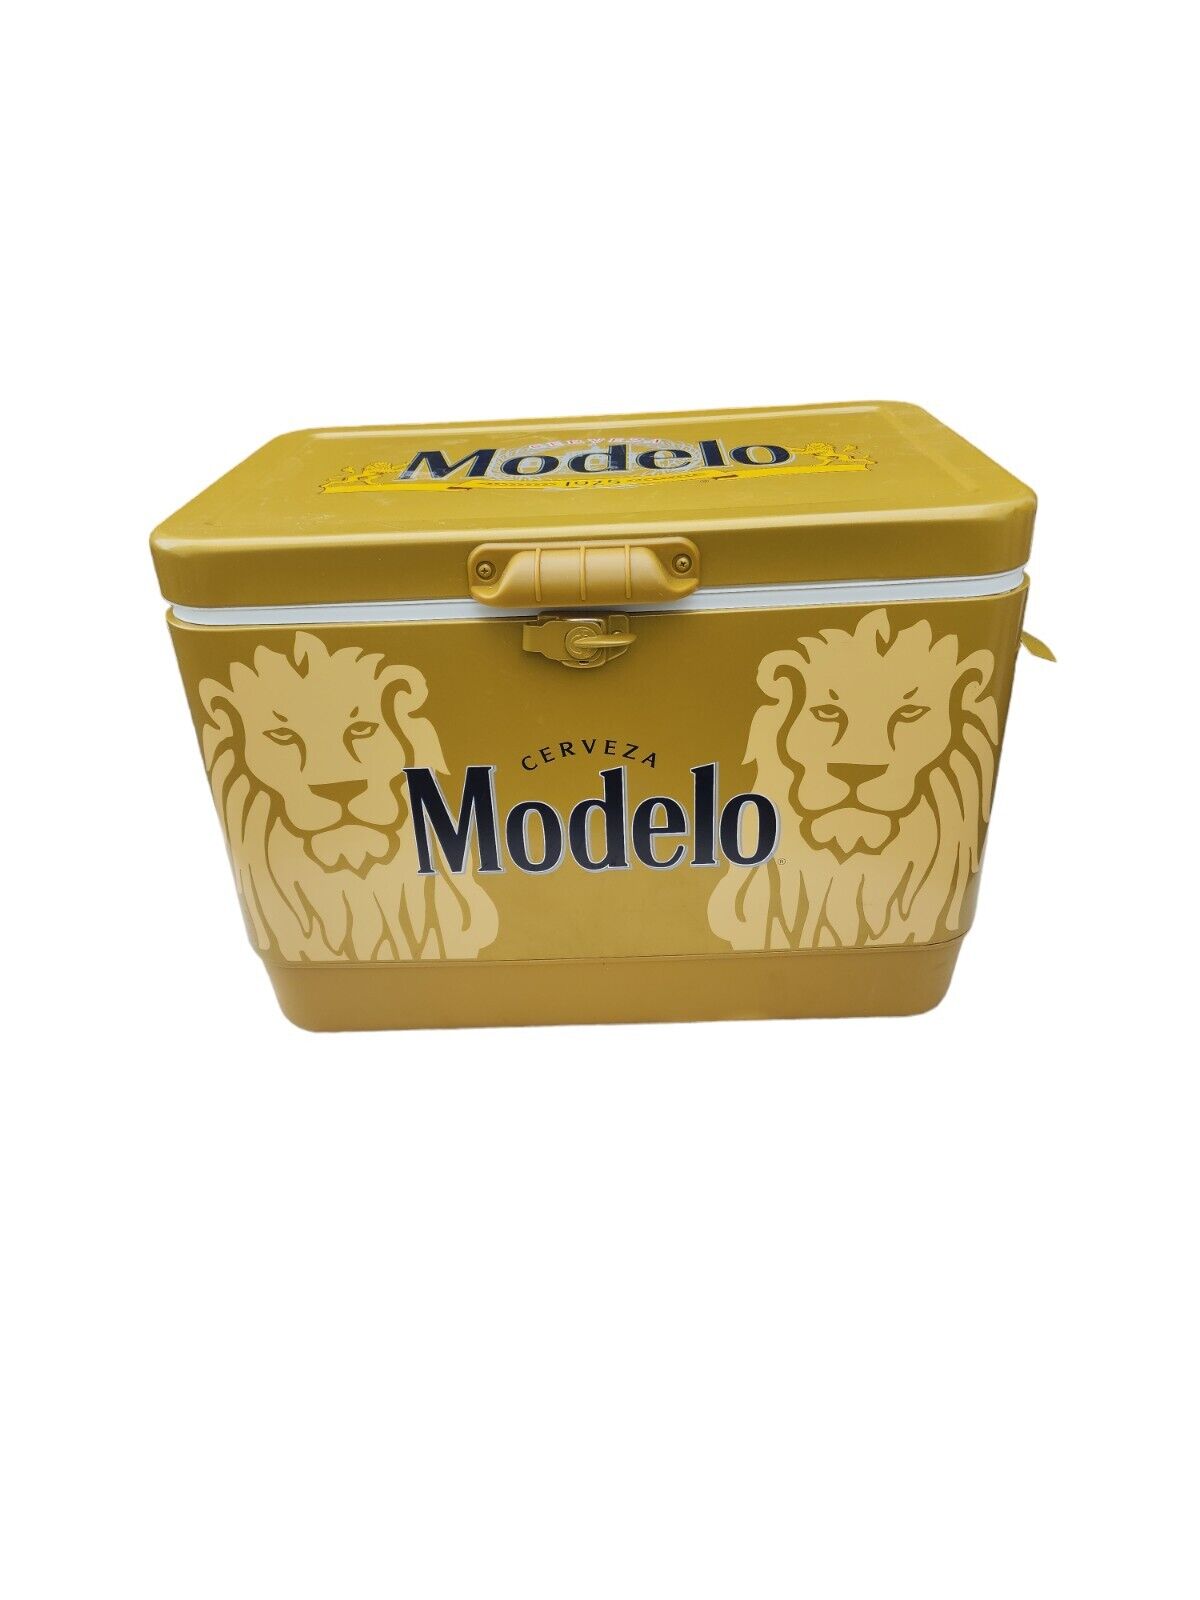 Modelo Cerveza Beer Branded 54 QUART Steel Belted Gold Cooler Tailgating